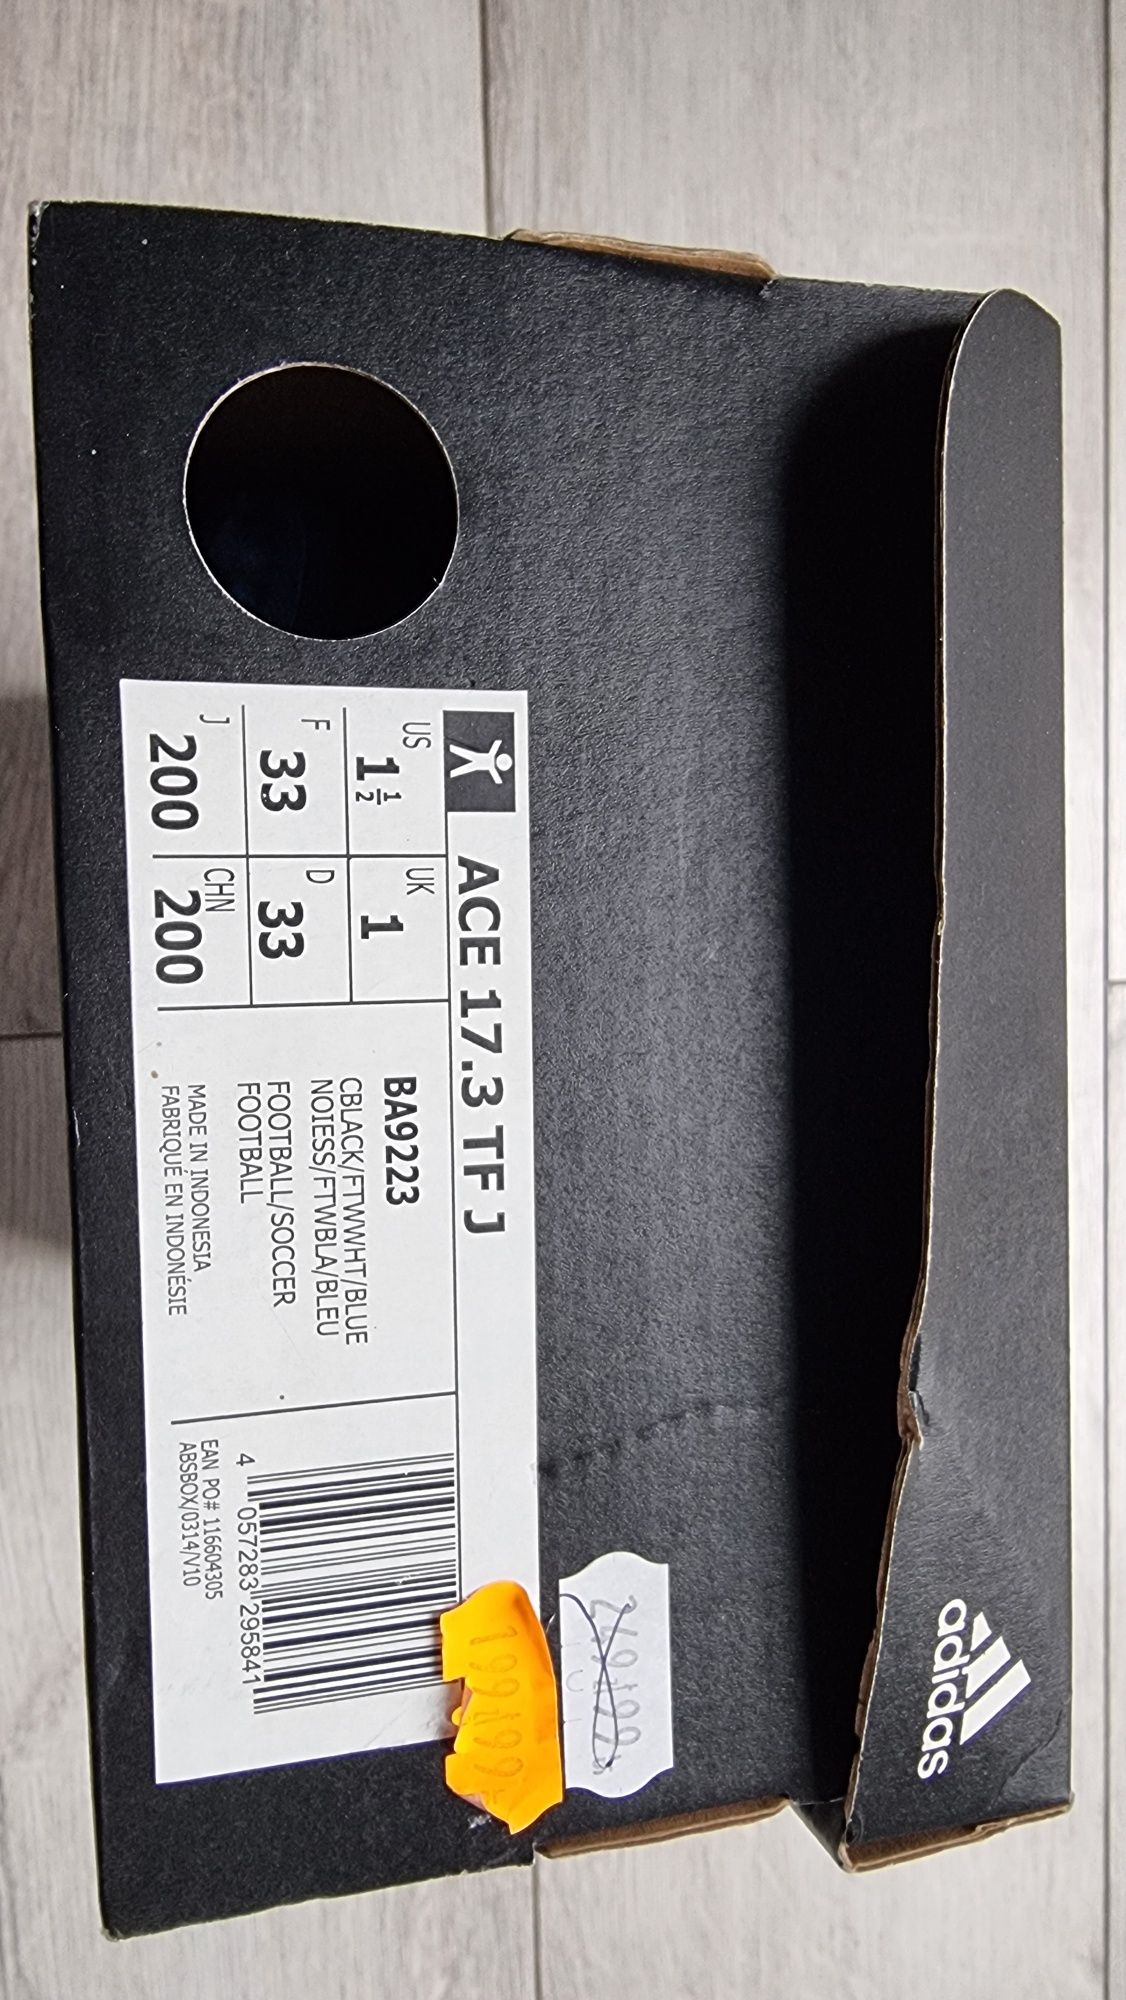 Buty do piłki Adidas Ace 17.3 TF turfy roz. 30 (20cm)